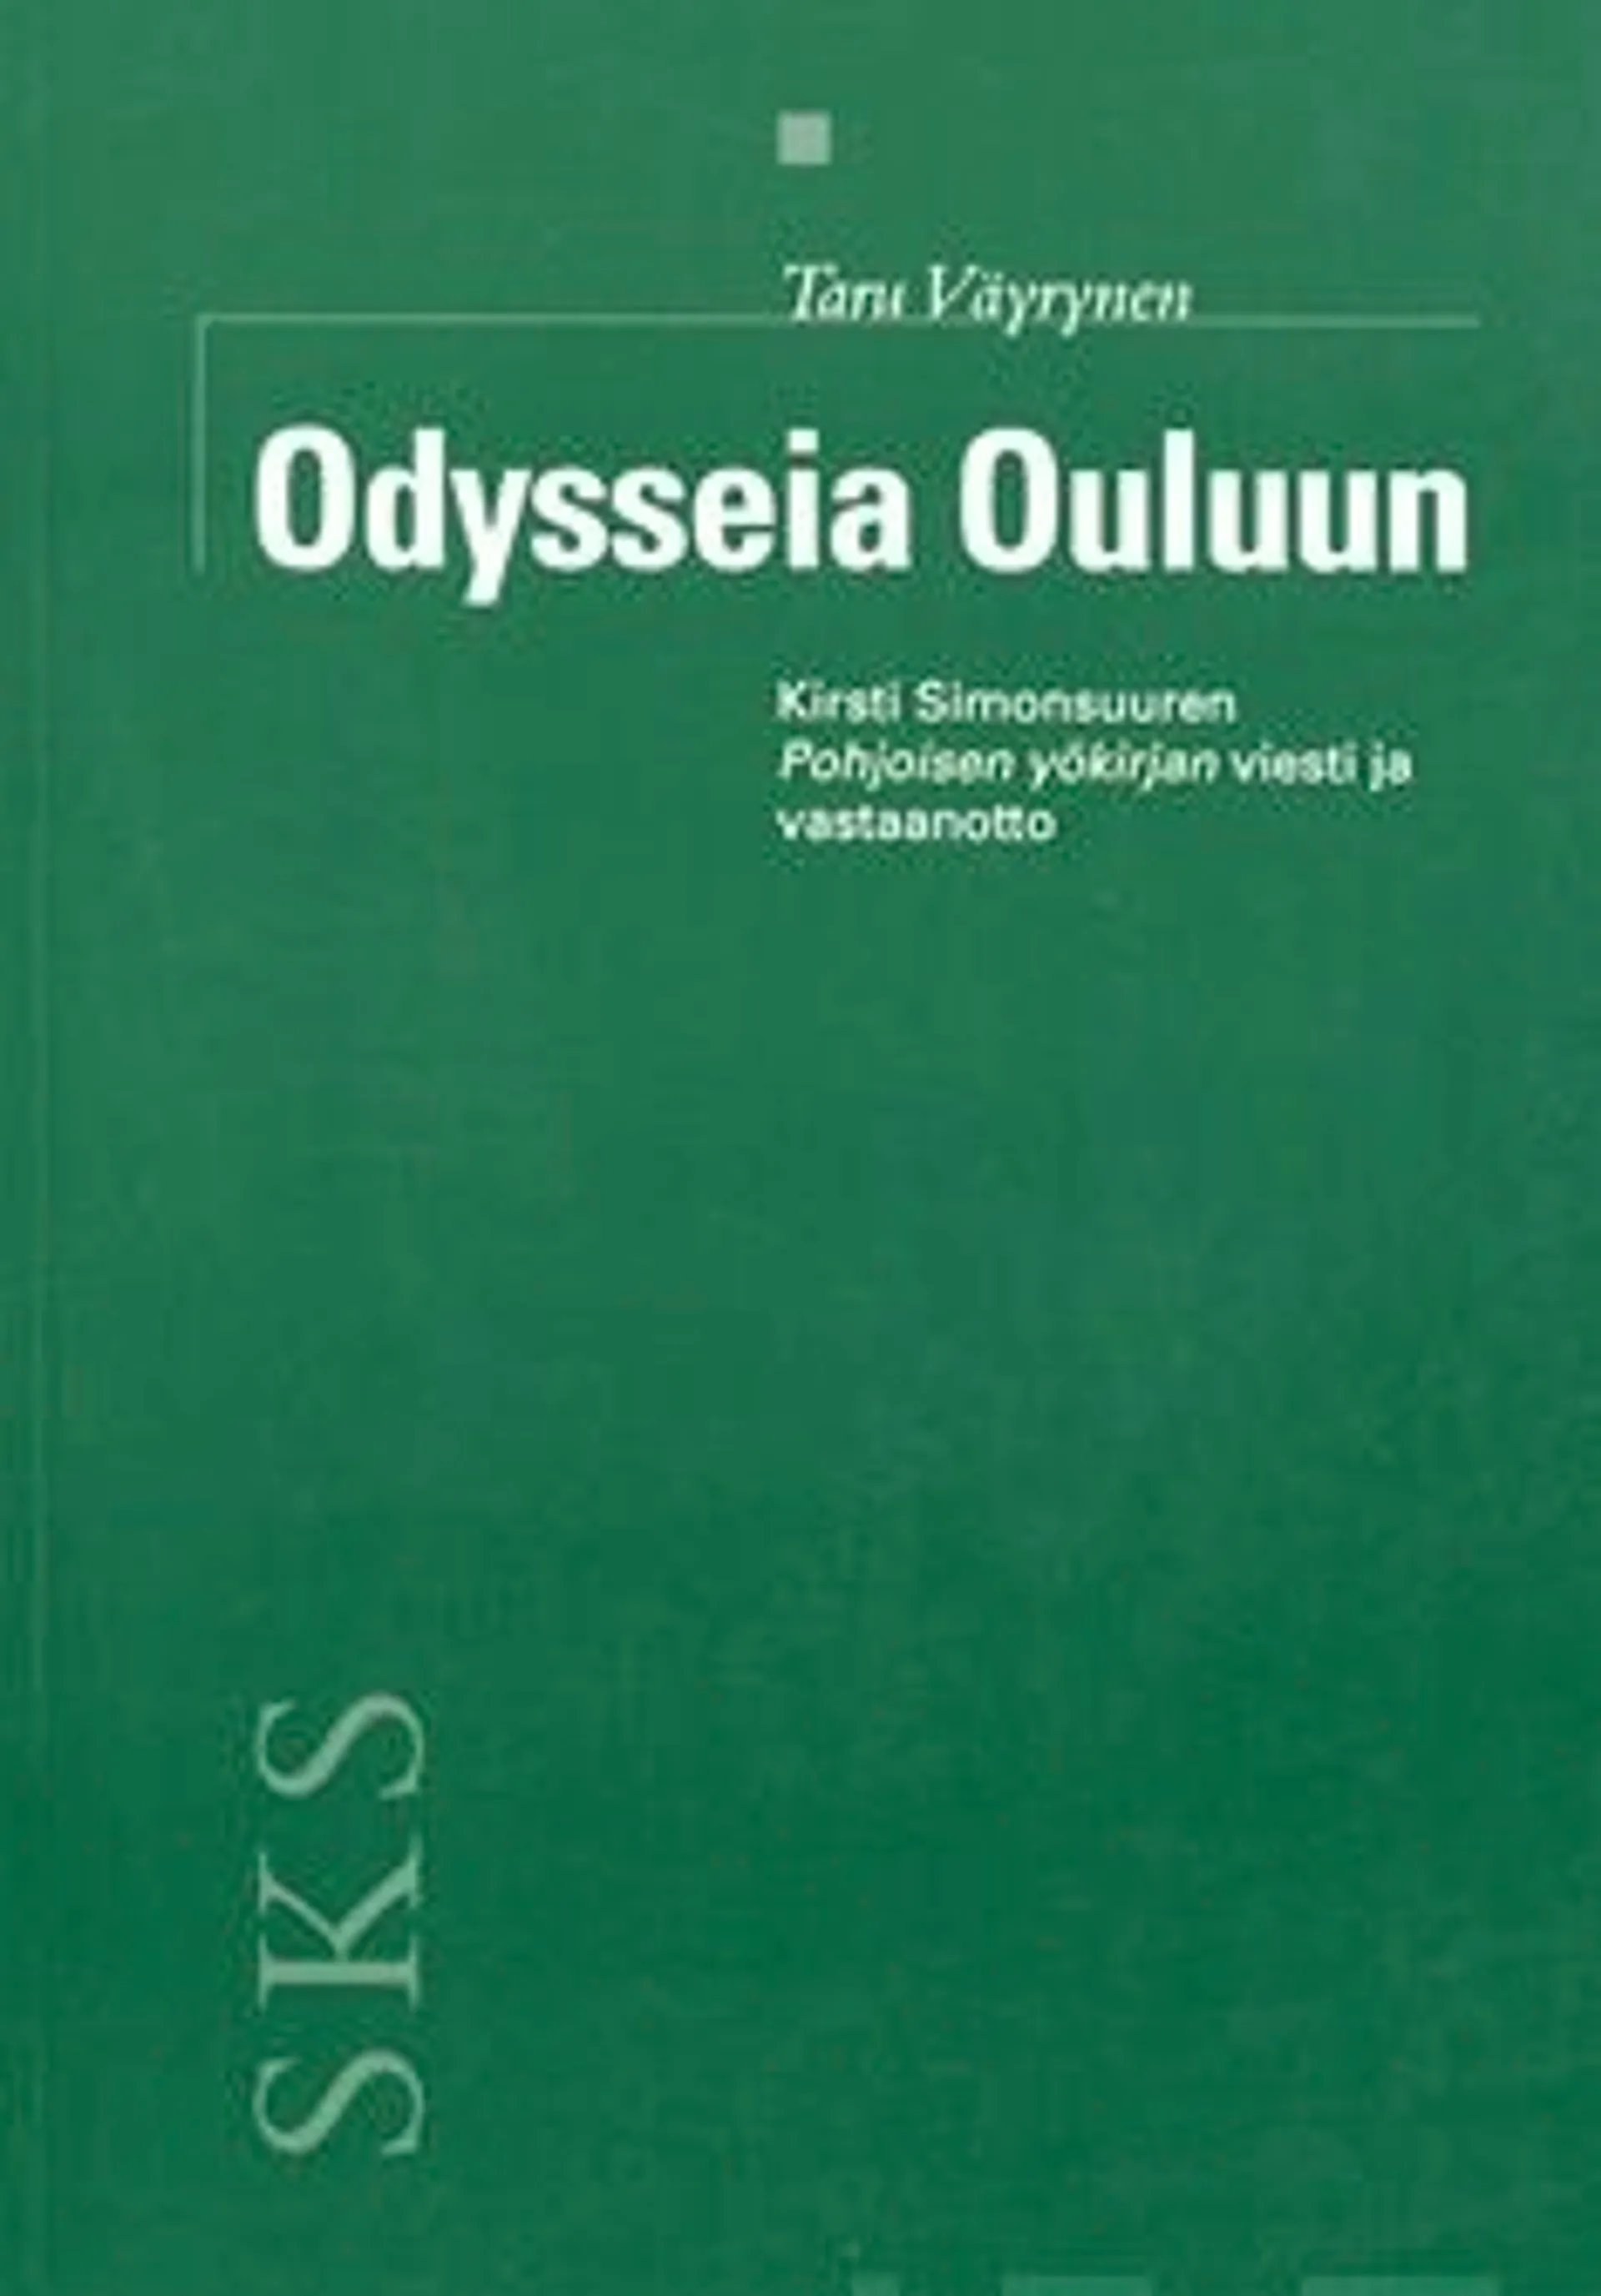 Väyrynen, Odysseia Ouluun